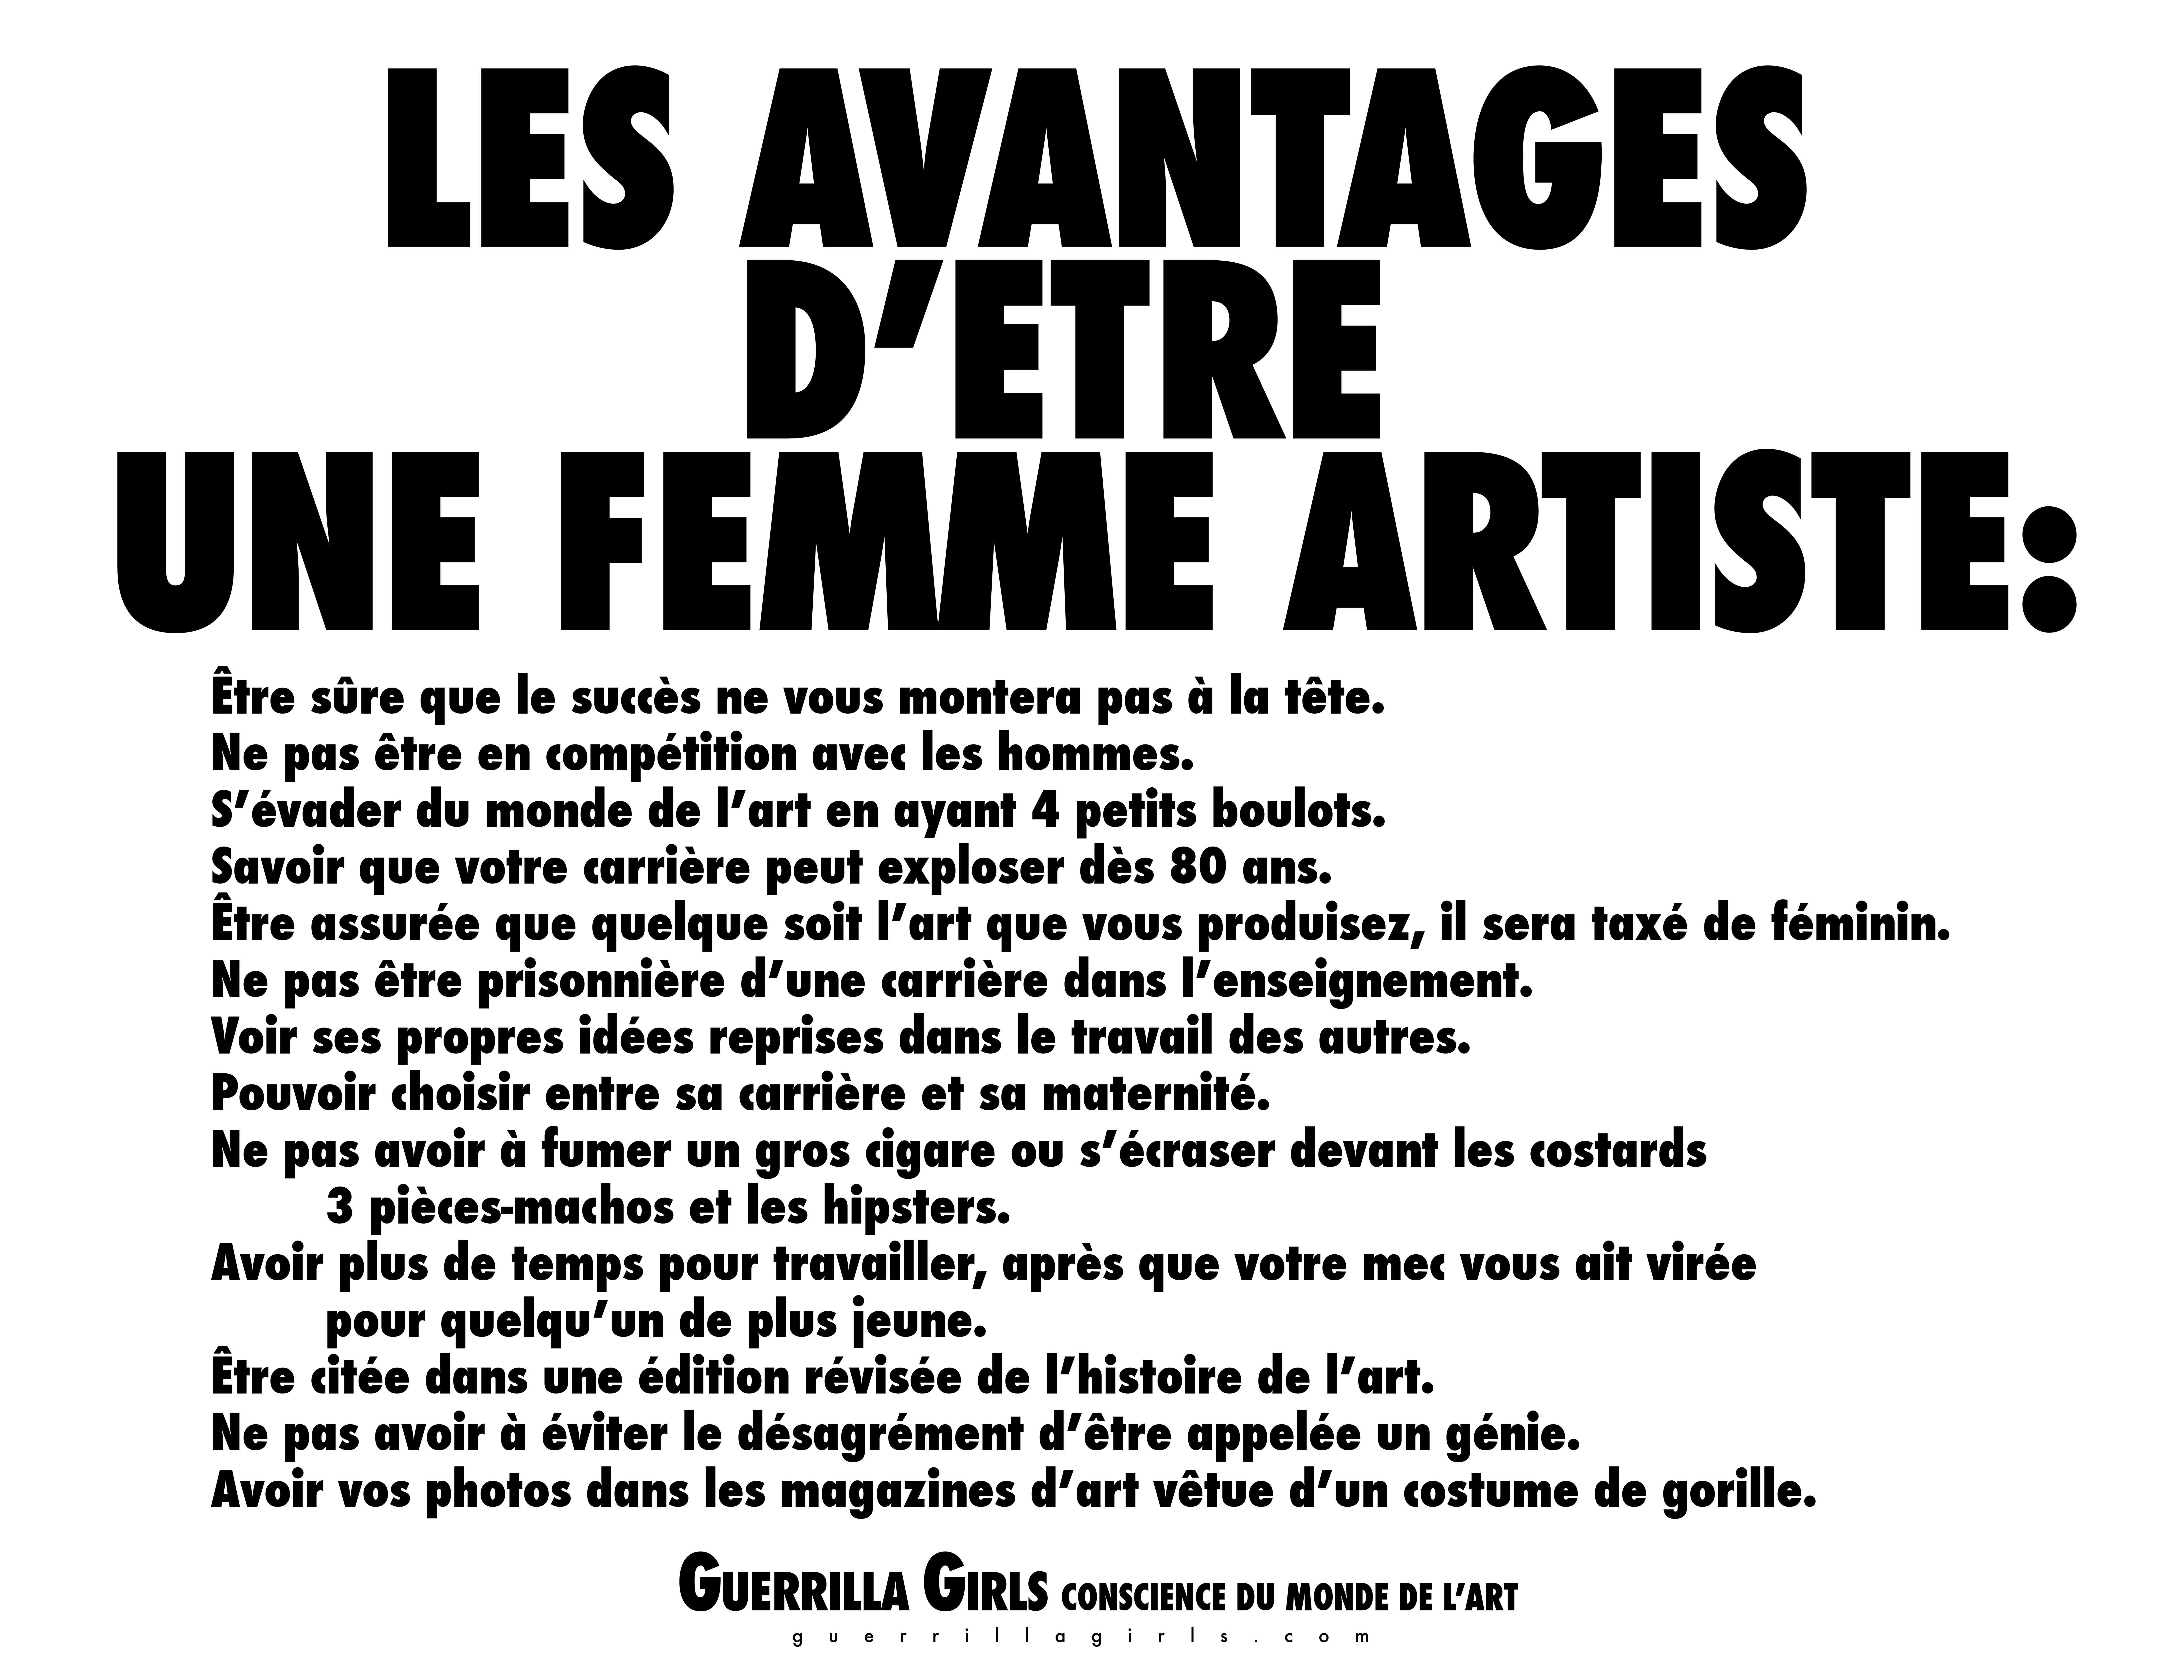 The Guerrilla Girls - Les Avantages d'Etre une Femme Artiste, 2016